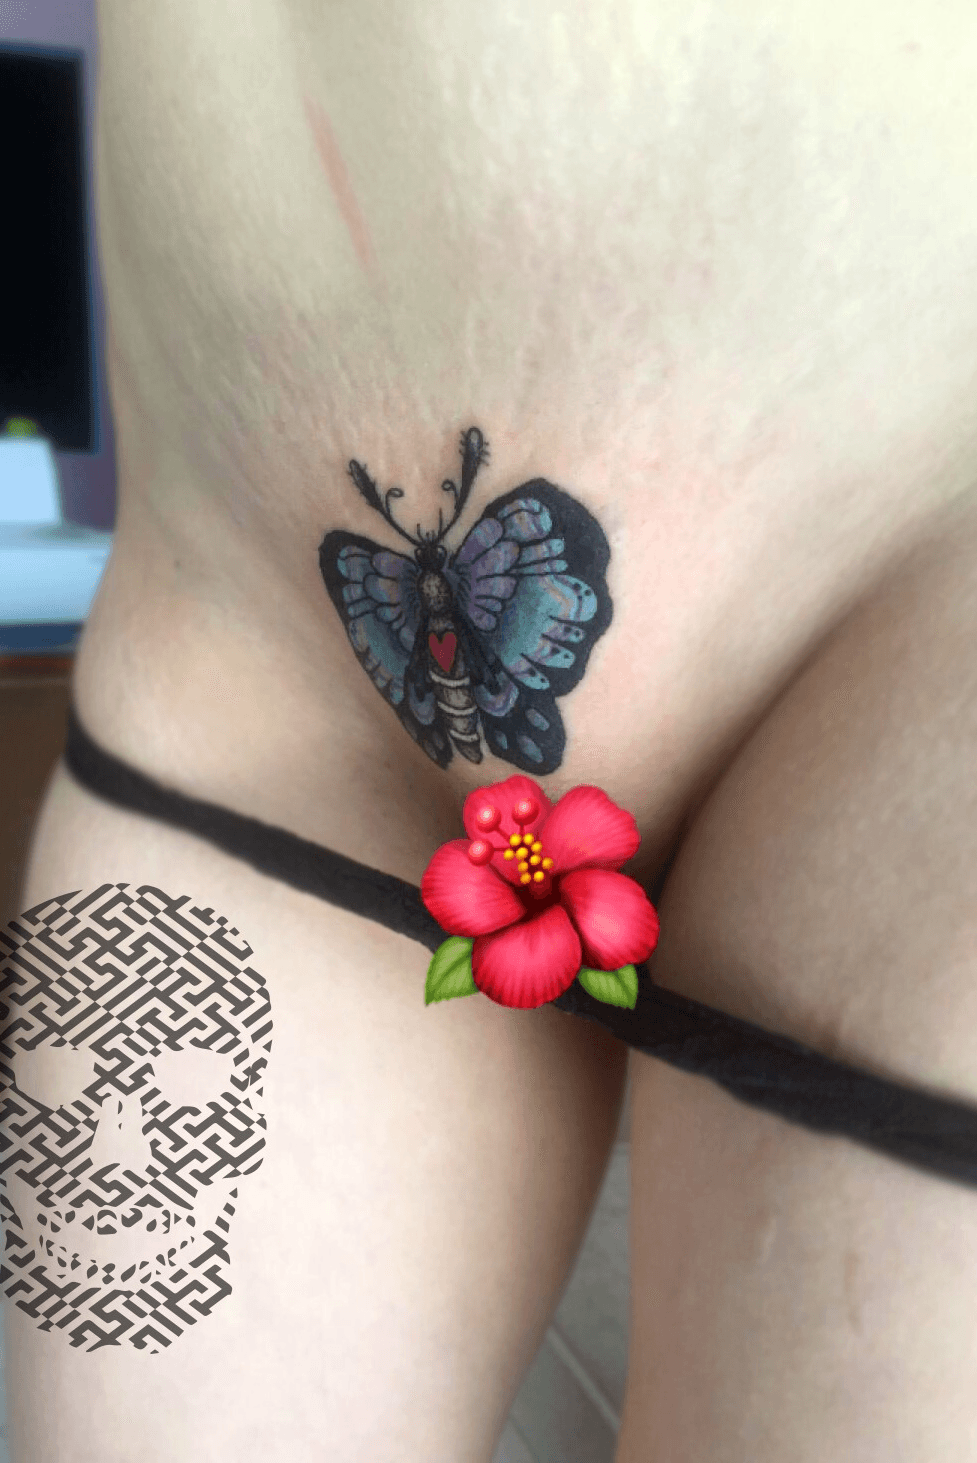 Clit Tattoo